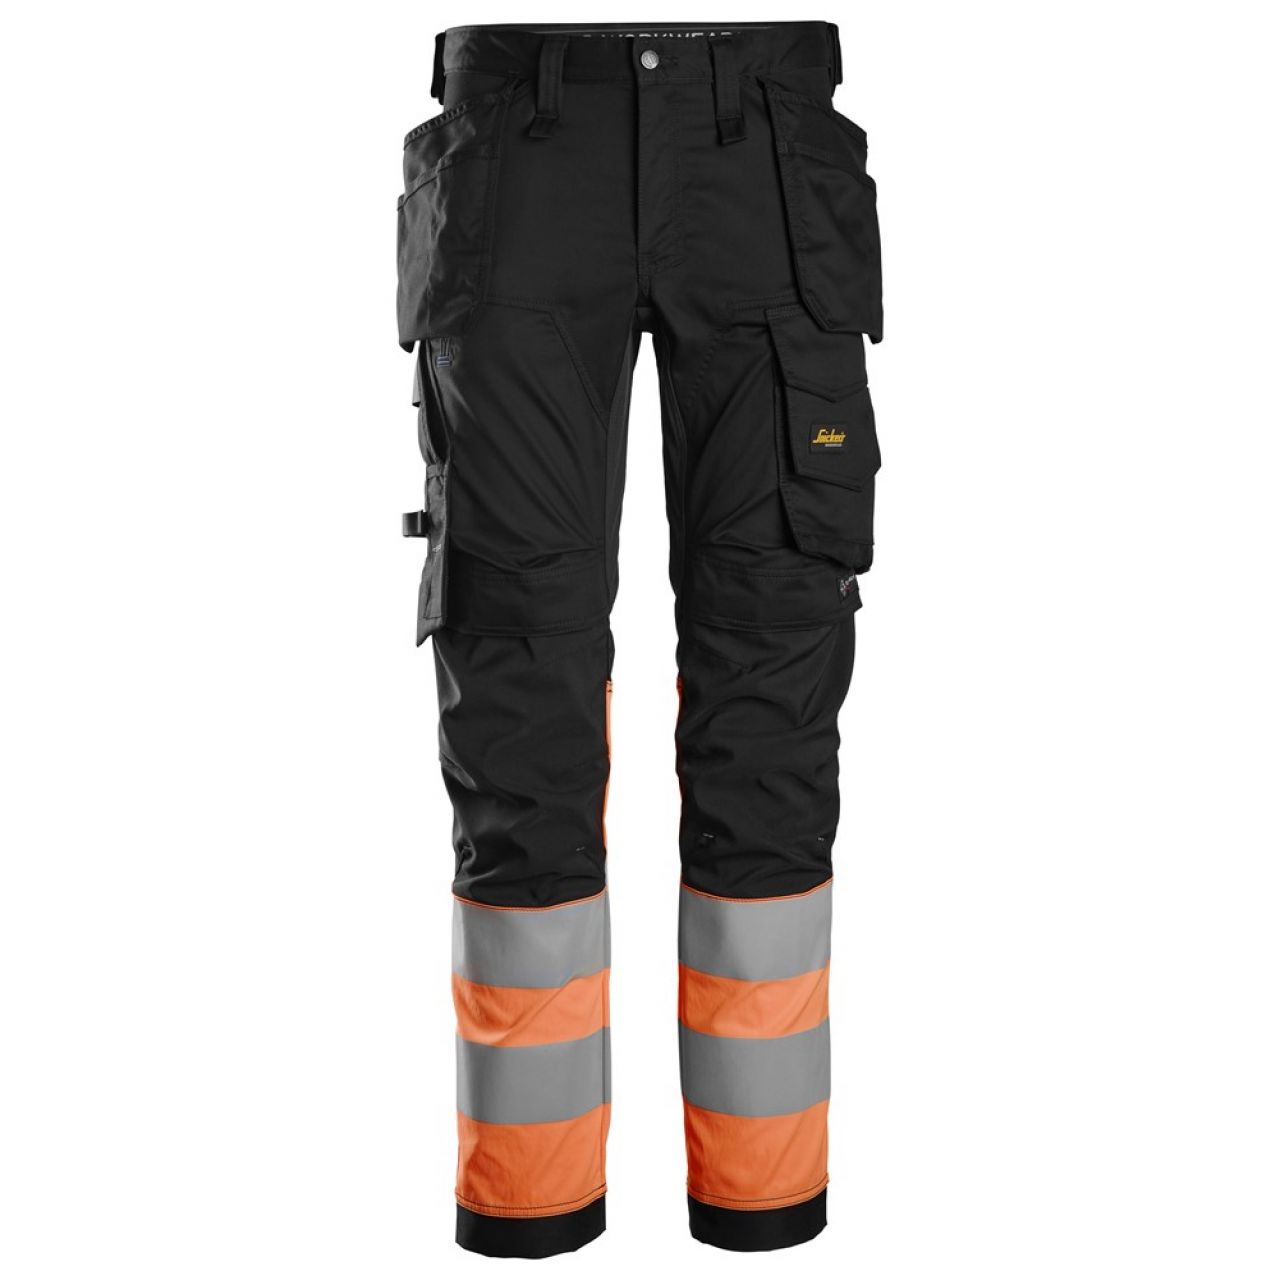 6234 Pantalones largos de trabajo elásticos de alta visibilidad clase 1 con bolsillos flotantes negro-naranja talla 148